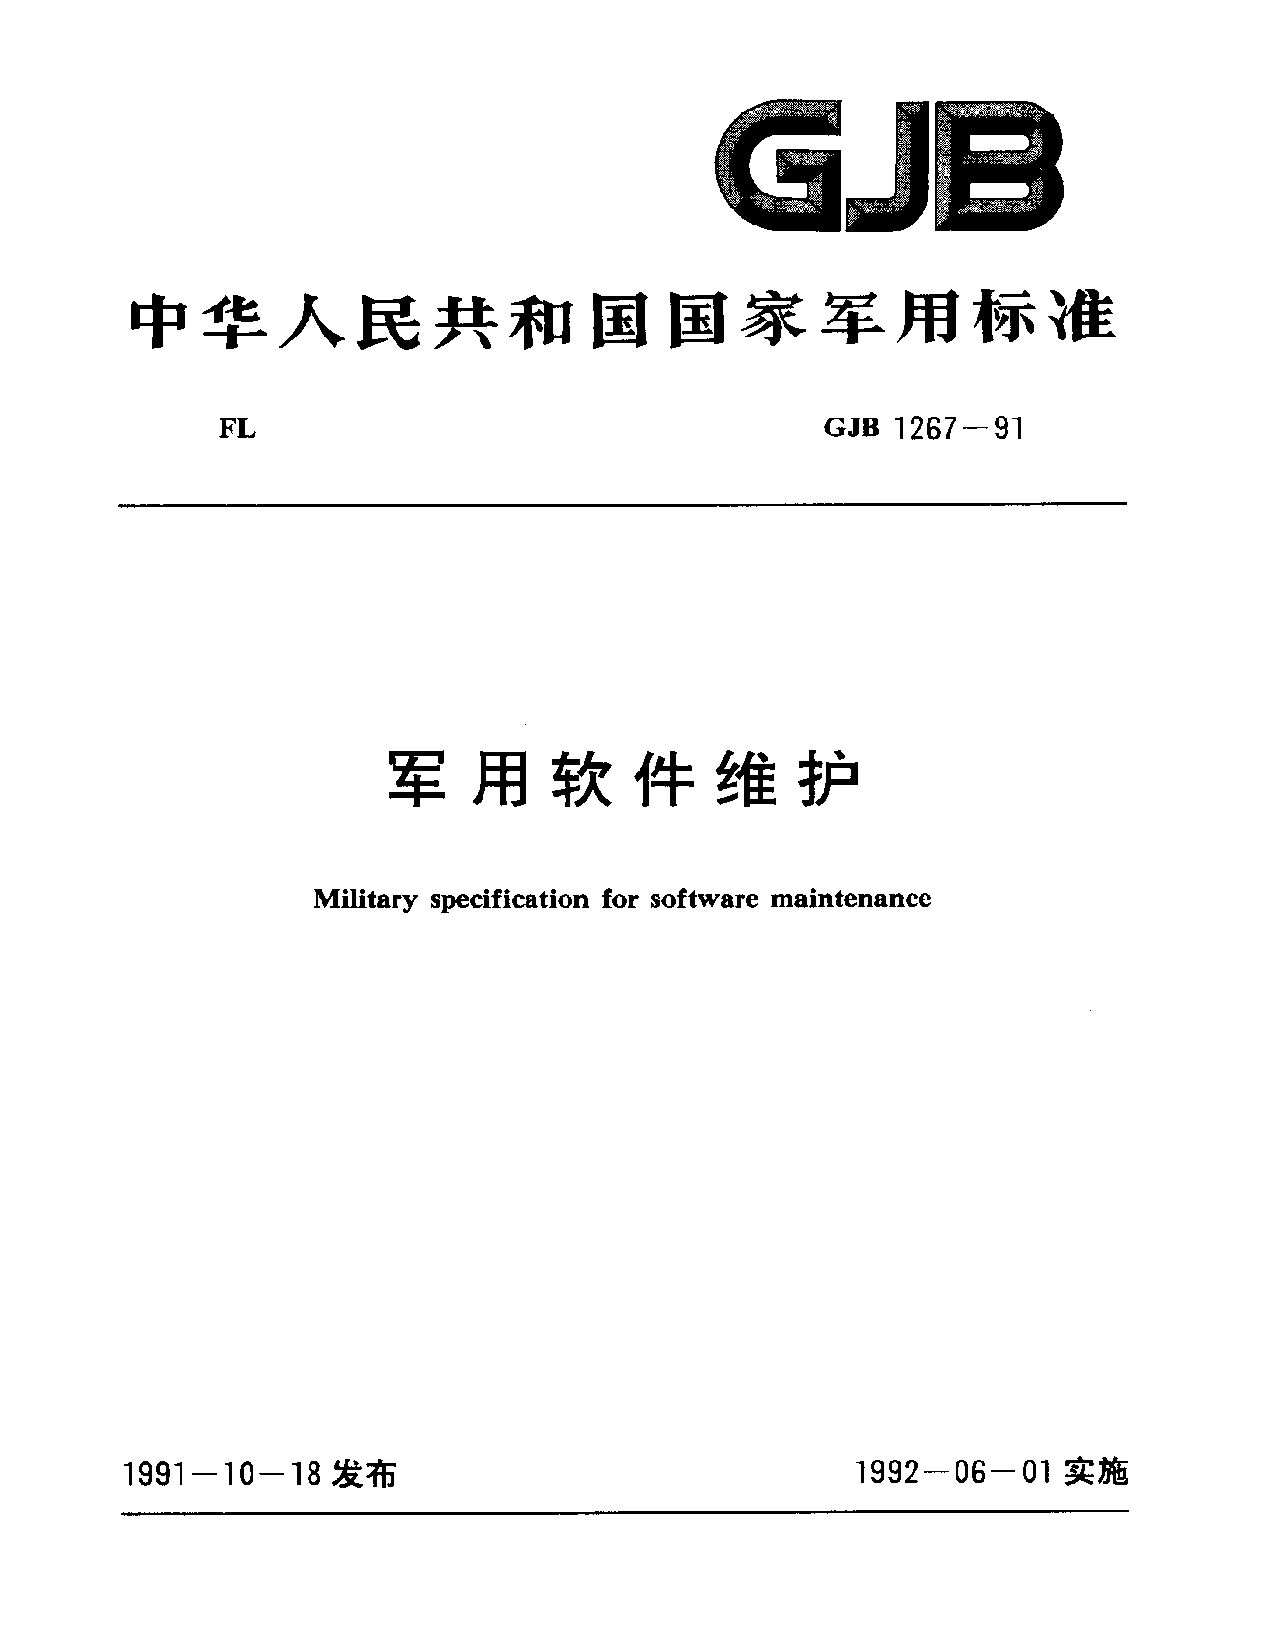 GJB 1267-1991封面图